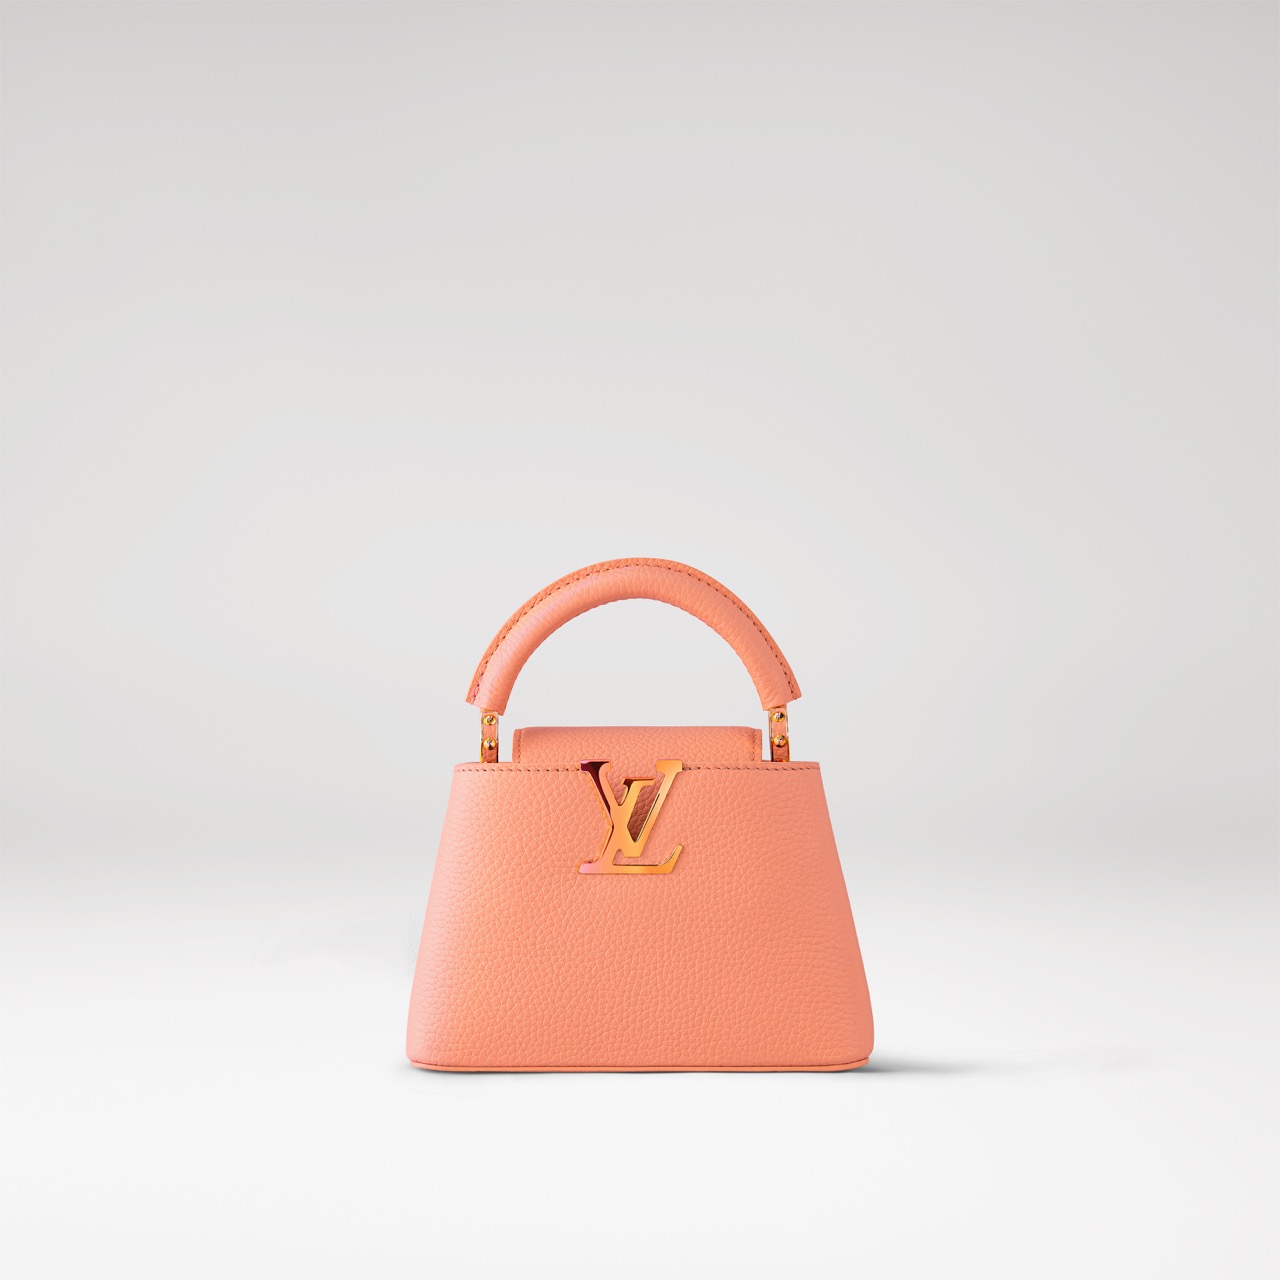 Культовая сумка Louis Vuitton Capucines — воплощение элегантности, стиля и истории французского Дома